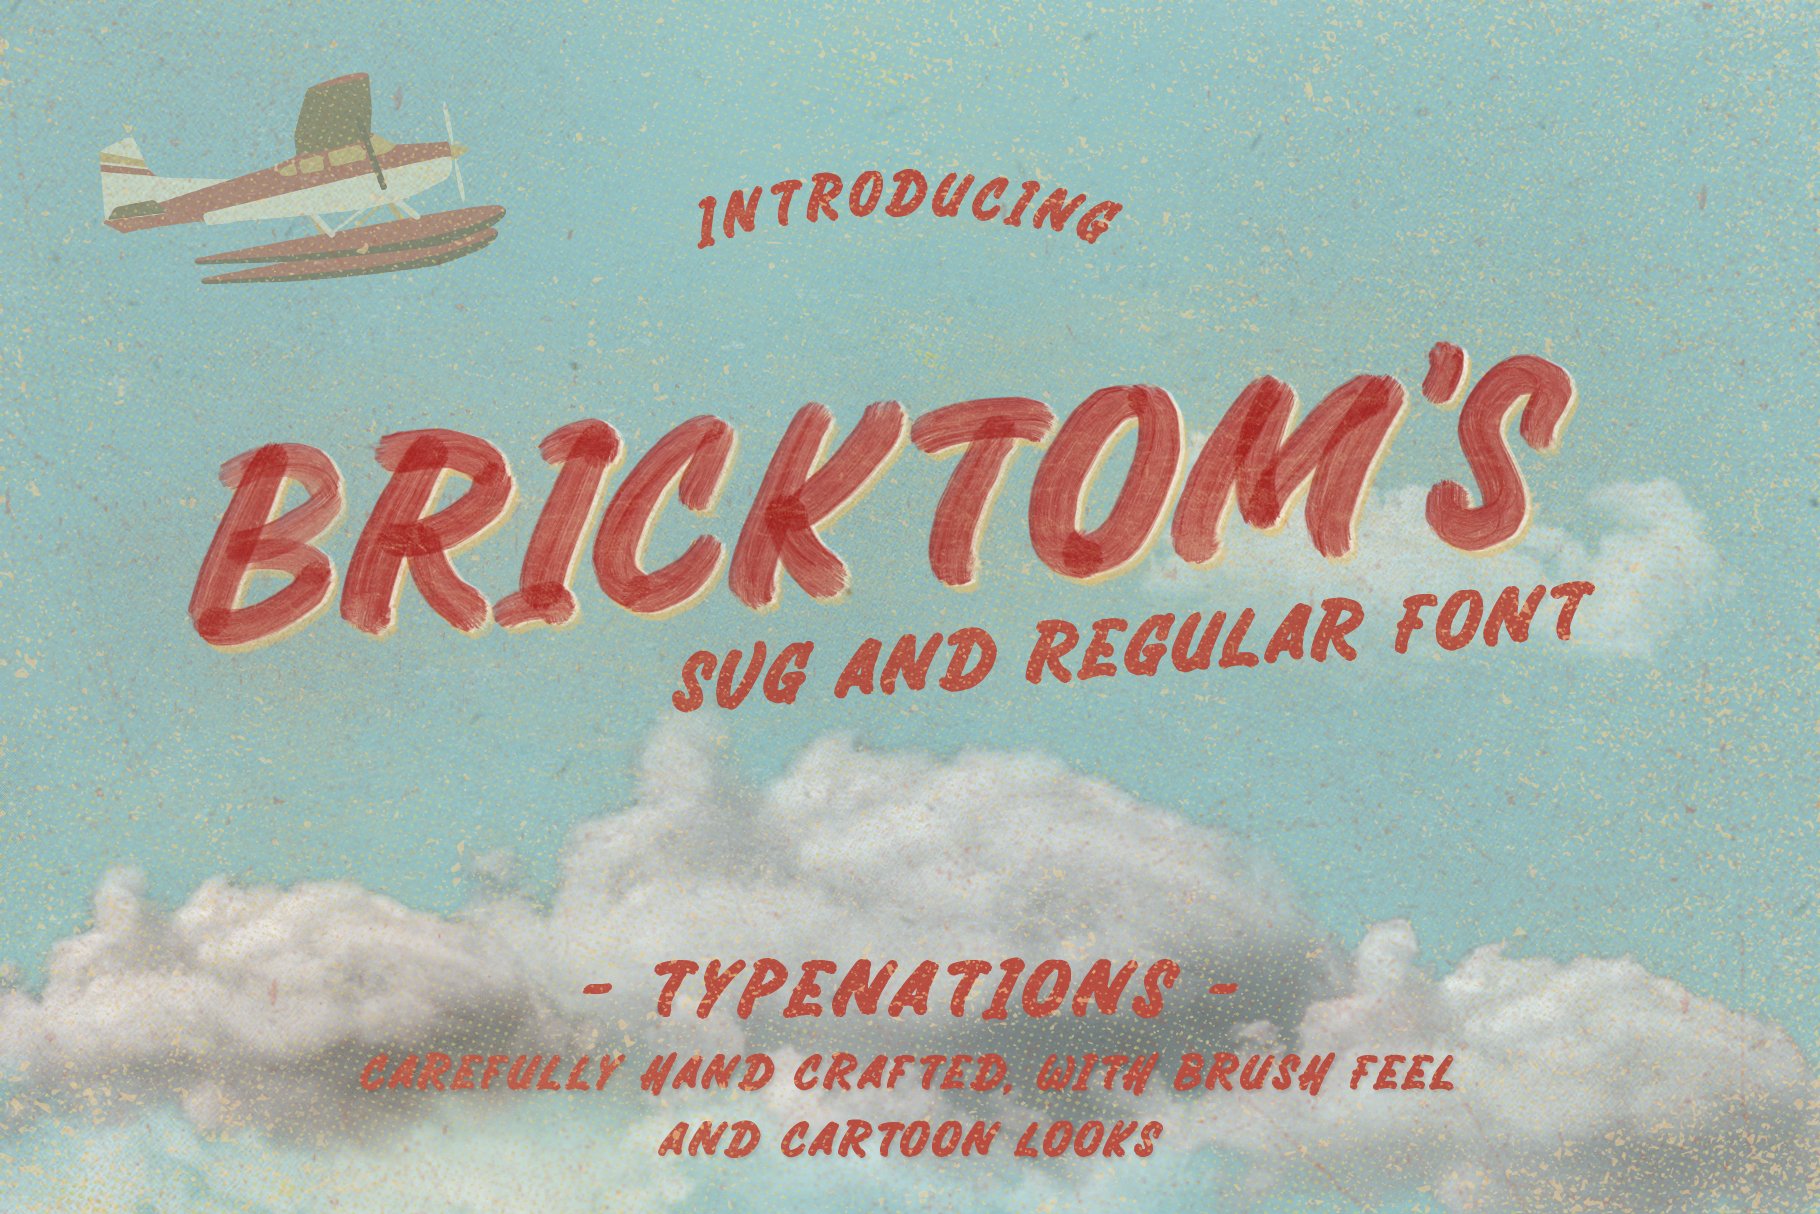 Bricktoms SVG & REGULAR cover image.